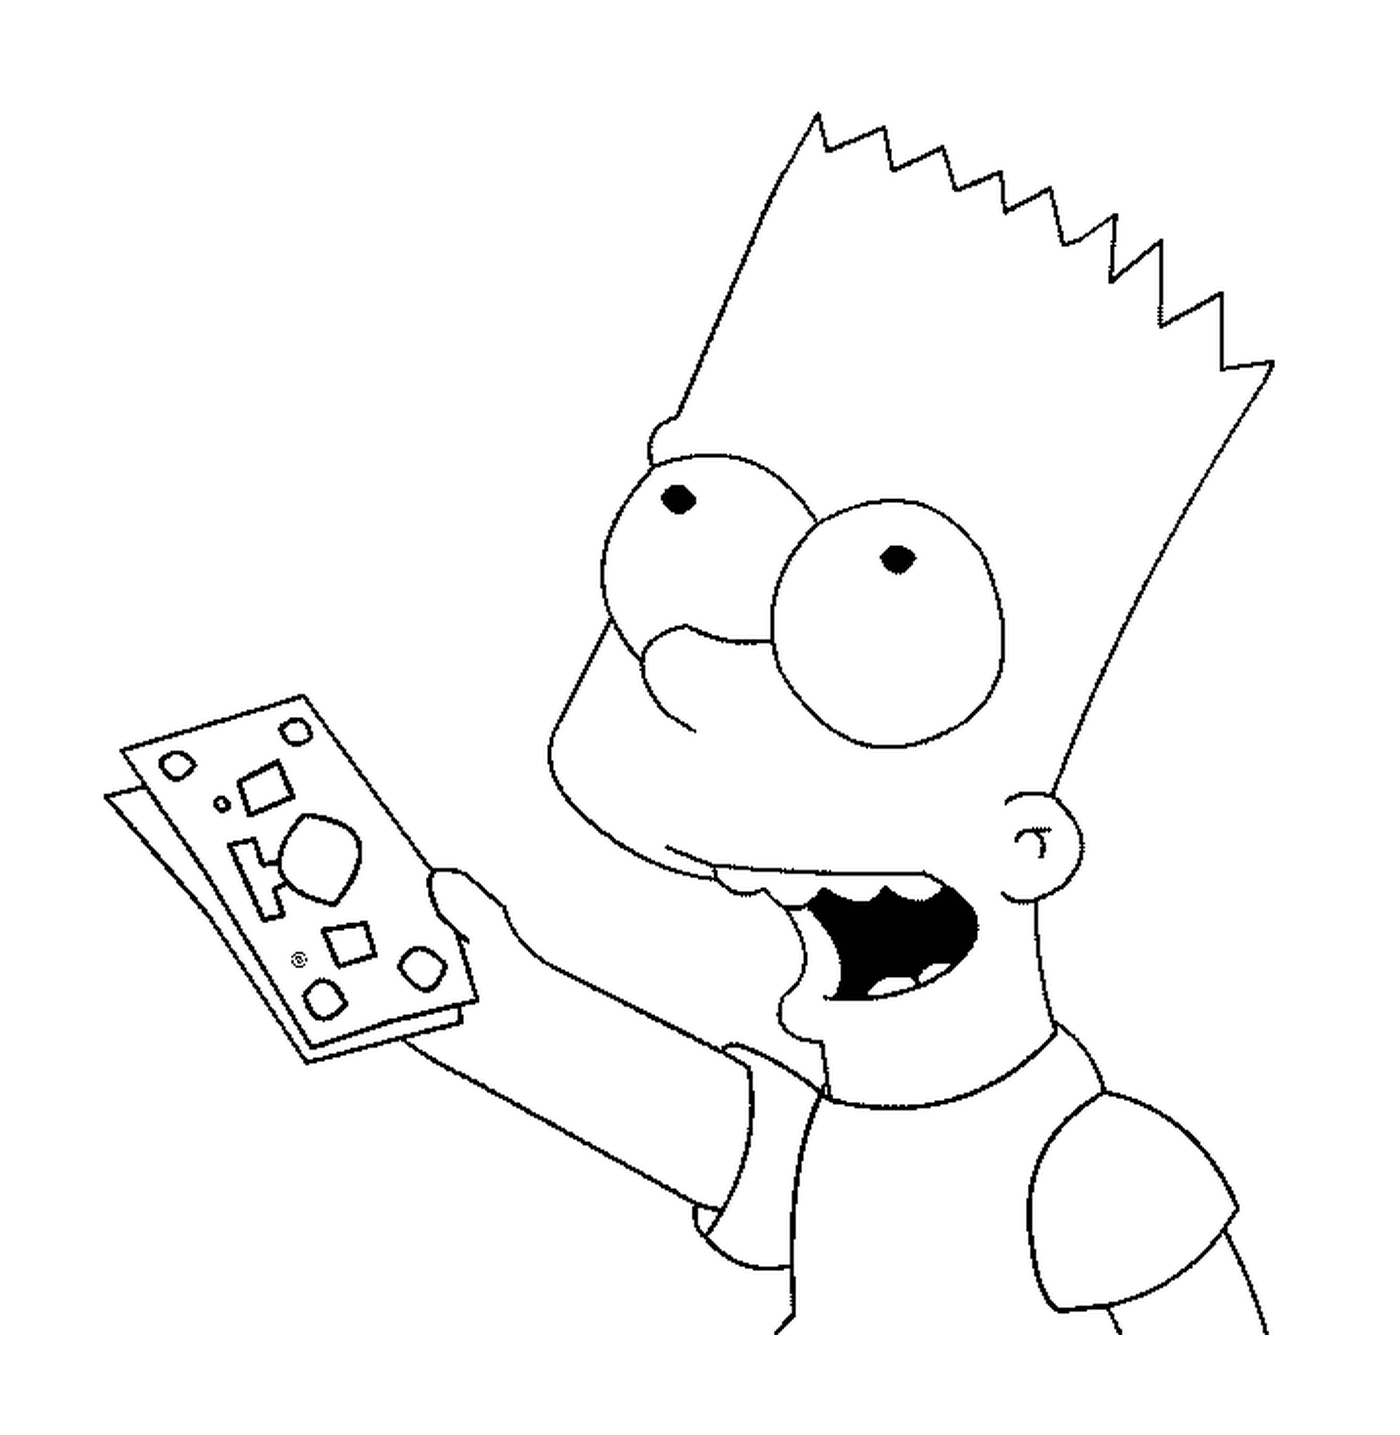   Bart a des billets de banque 